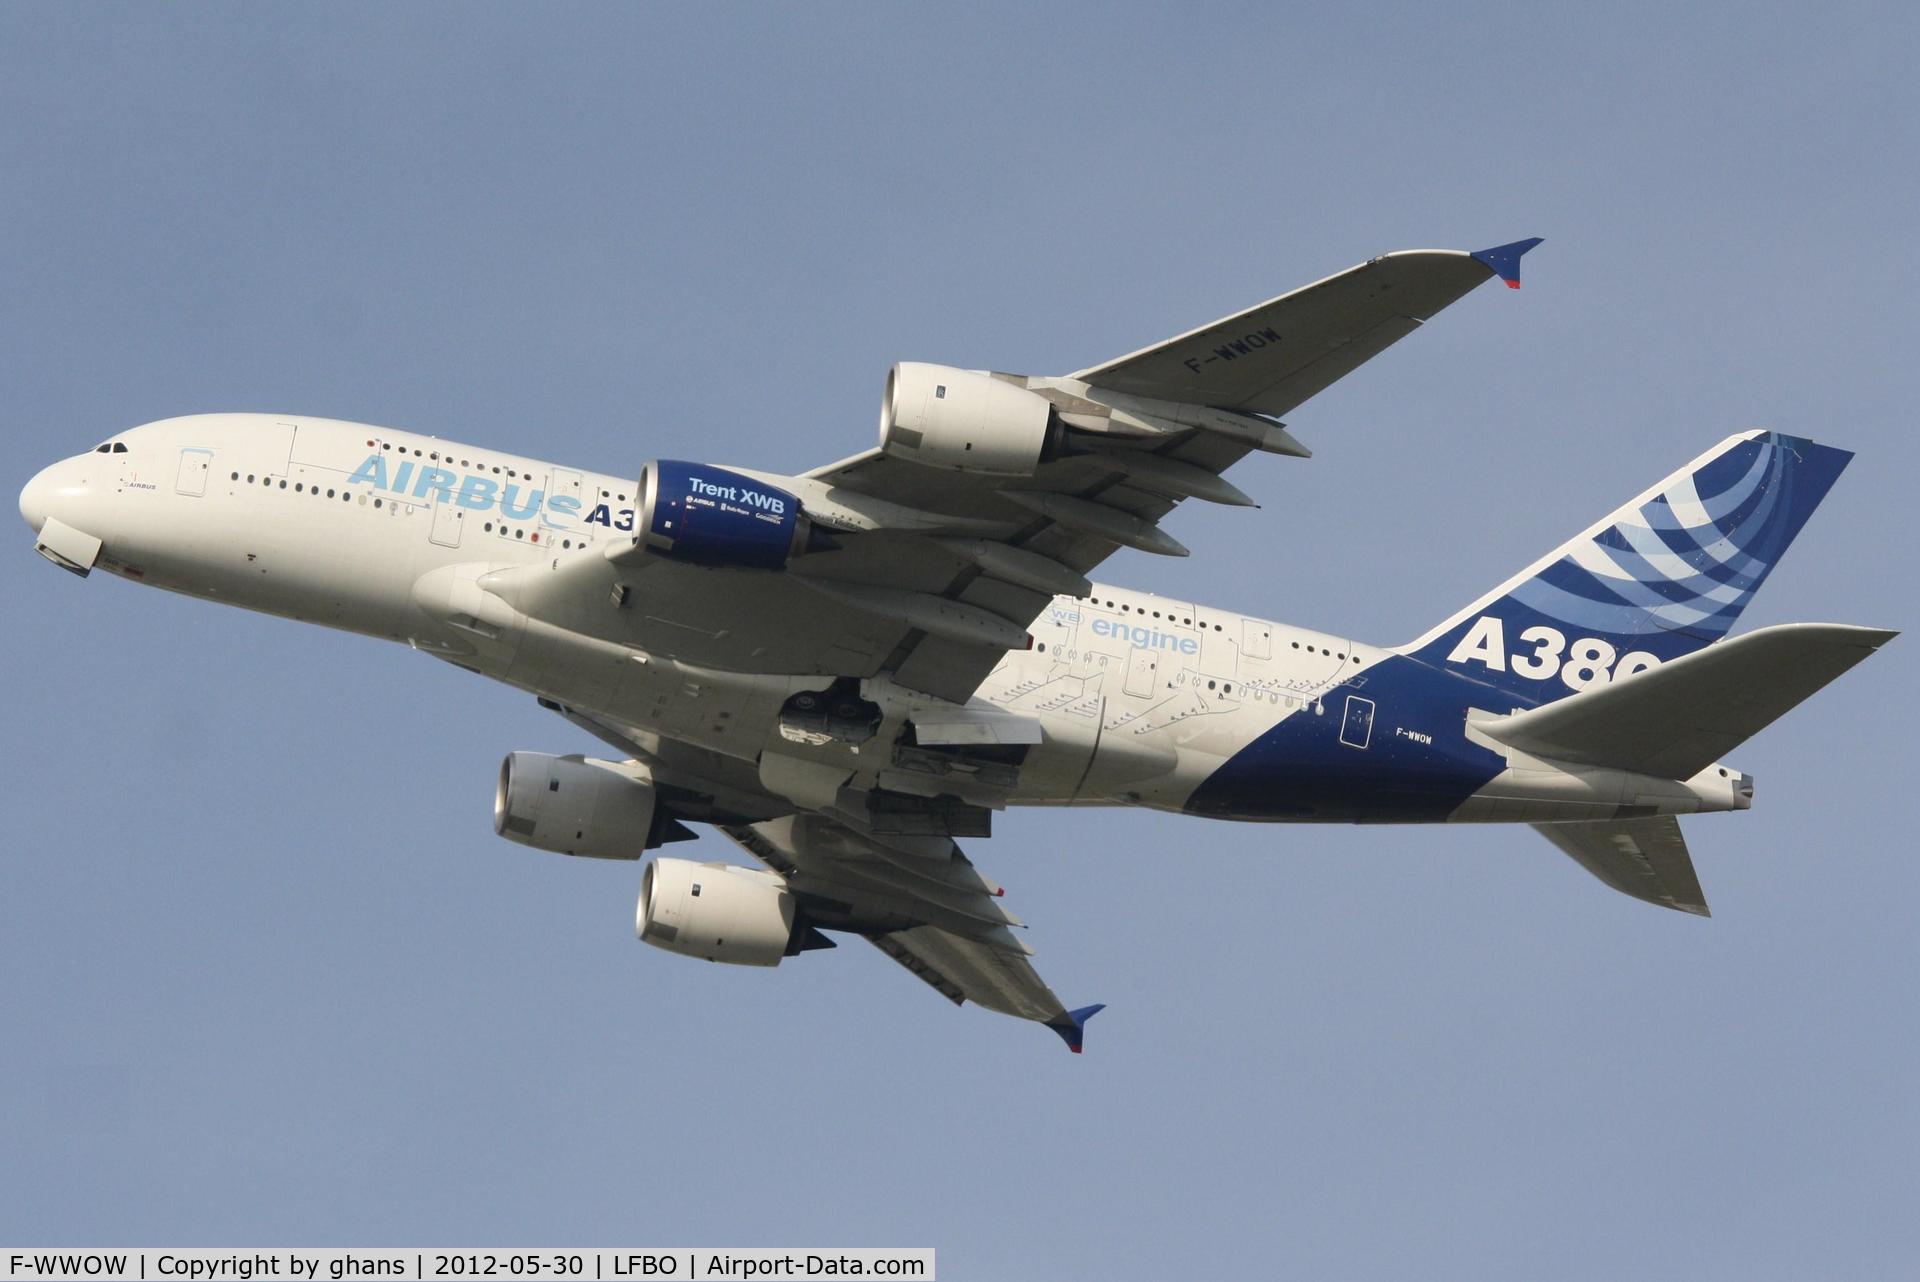 F-WWOW, 2005 Airbus A380-841 C/N 001, testing A350 engine